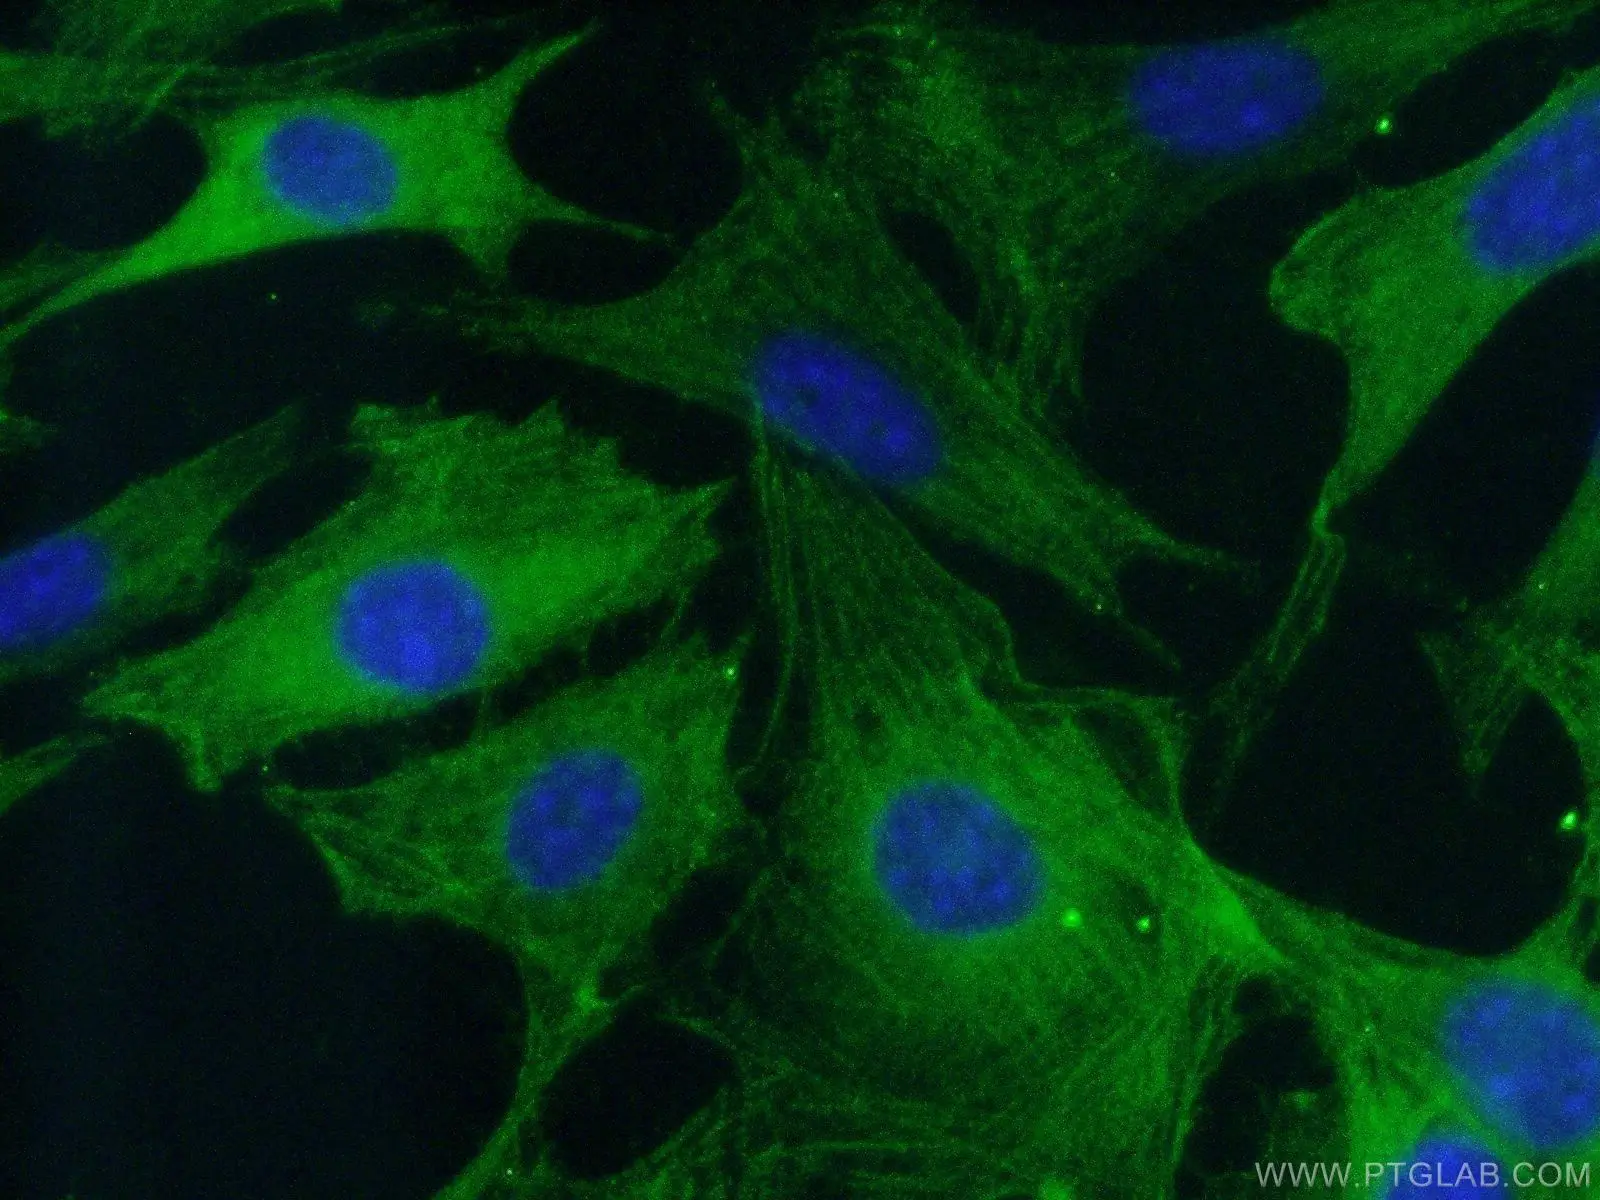 Immunofluorescent analysis of fixed NIH/3T3 cells using Caspase 3 antibody